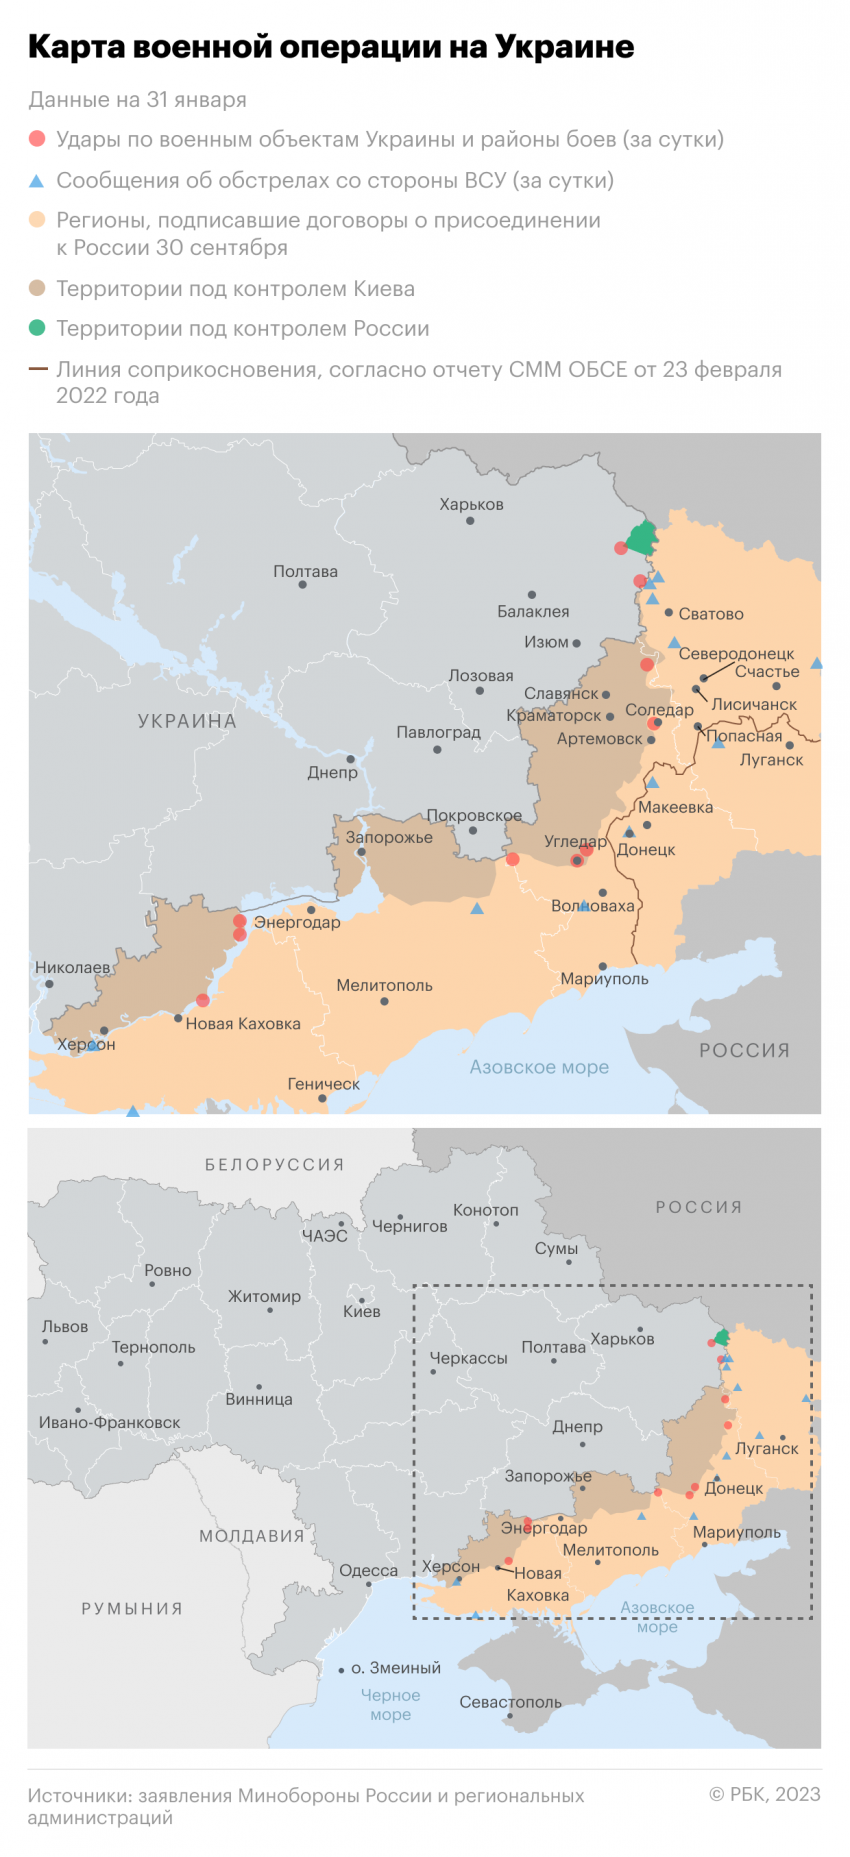 Обновленная карта военной операции на Украине на 1 февраля 2023 года, фронтовые сводки и главные события дня